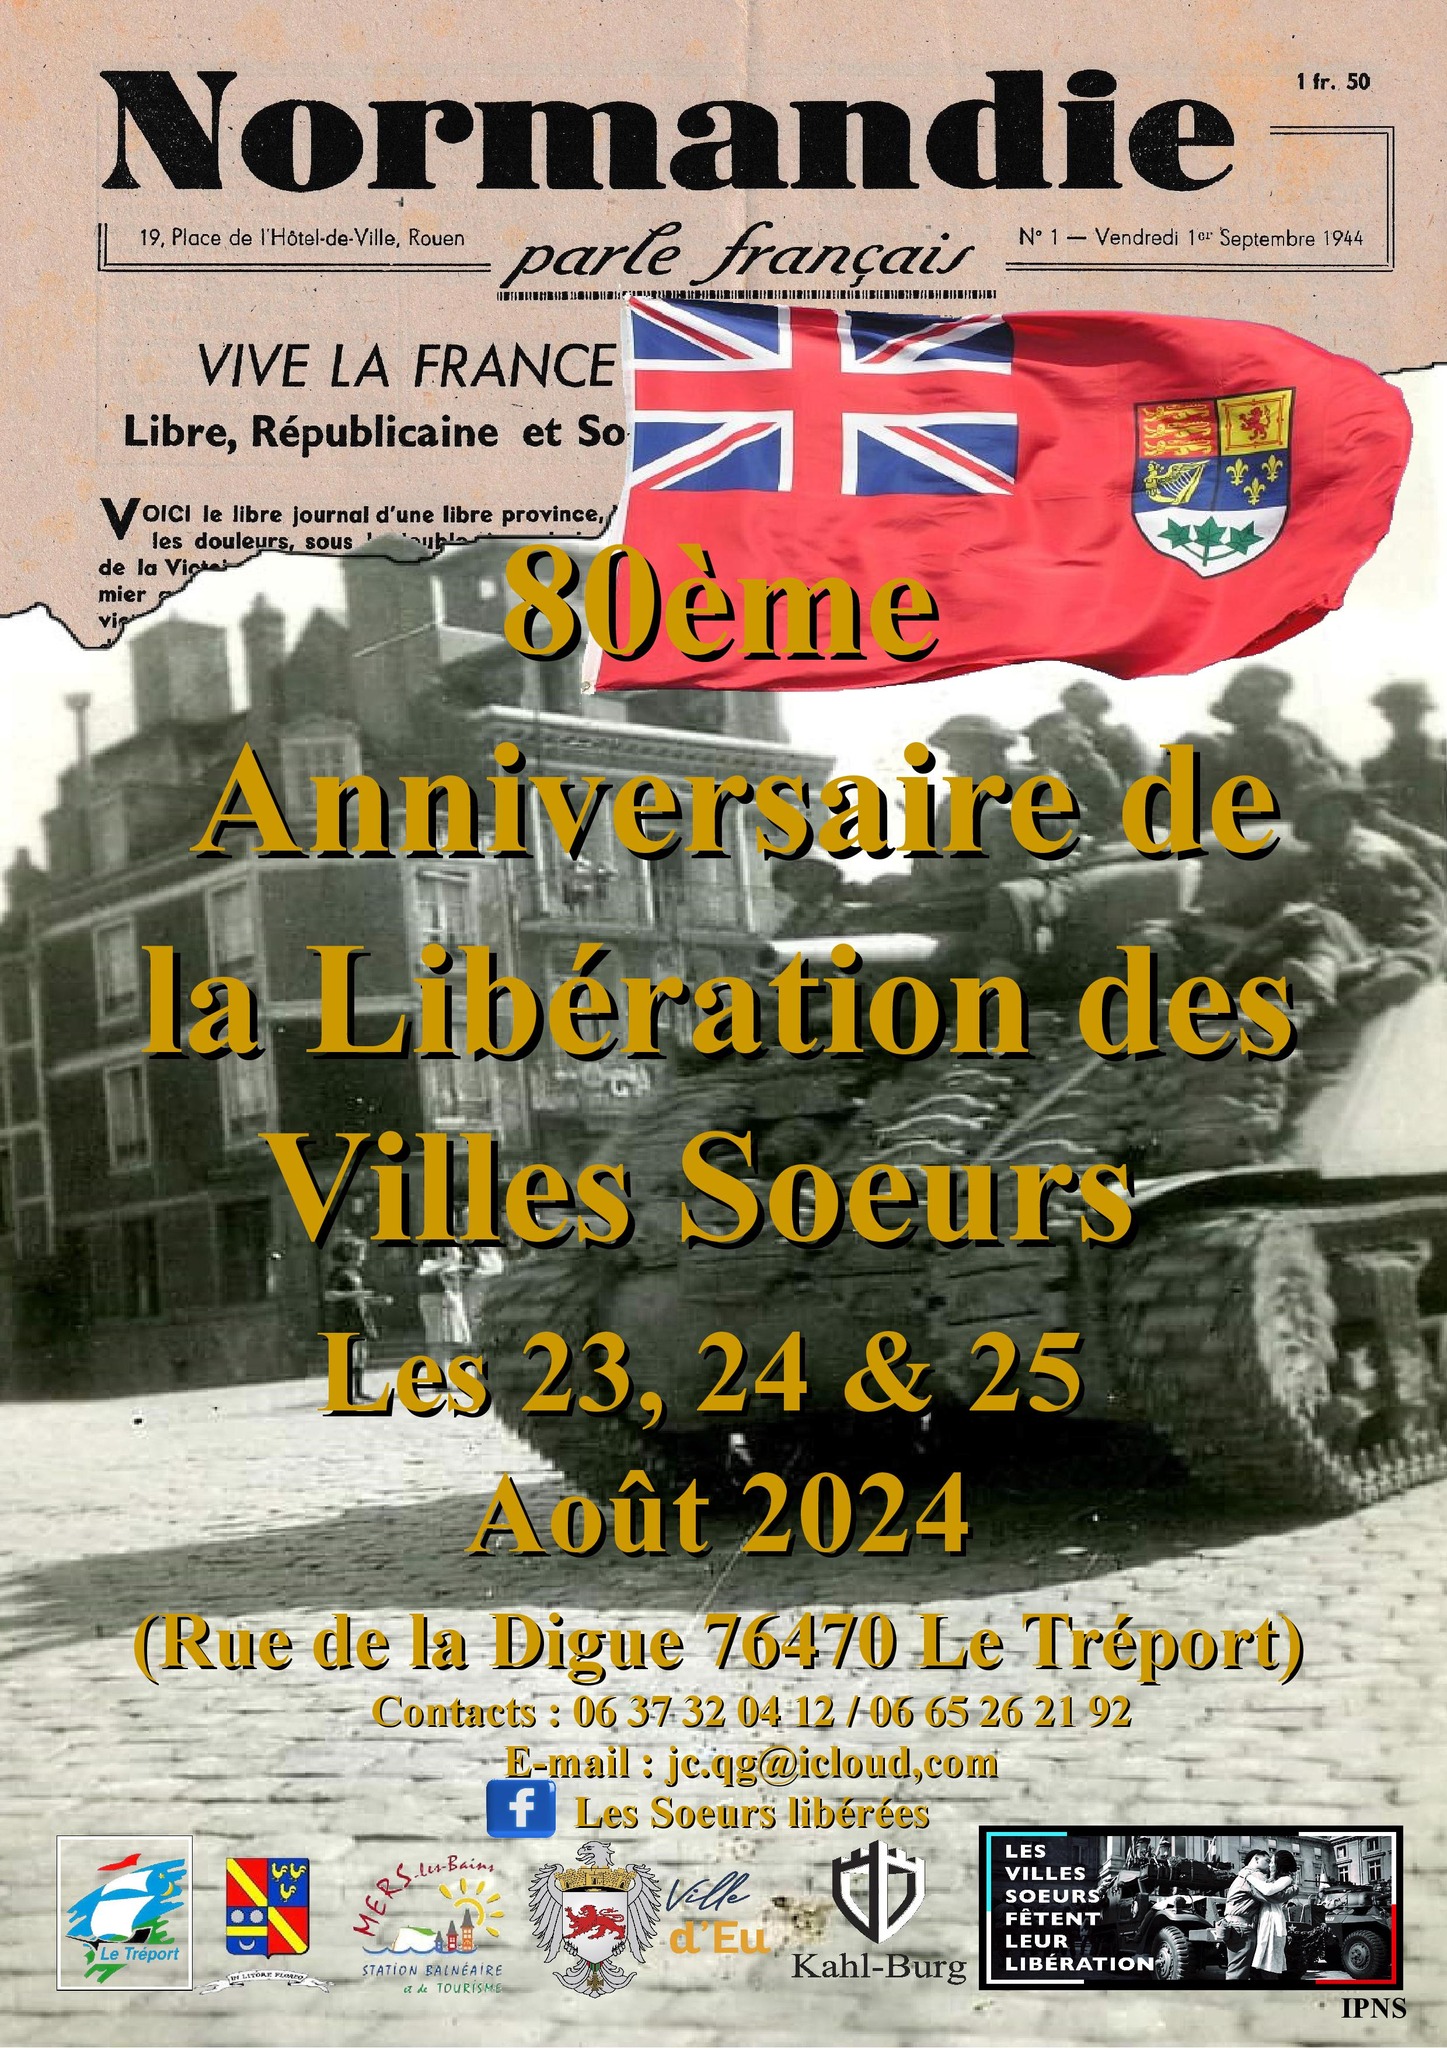 082524 - LE TREPORT - Anniversaire de la Libération des Villes Soeurs